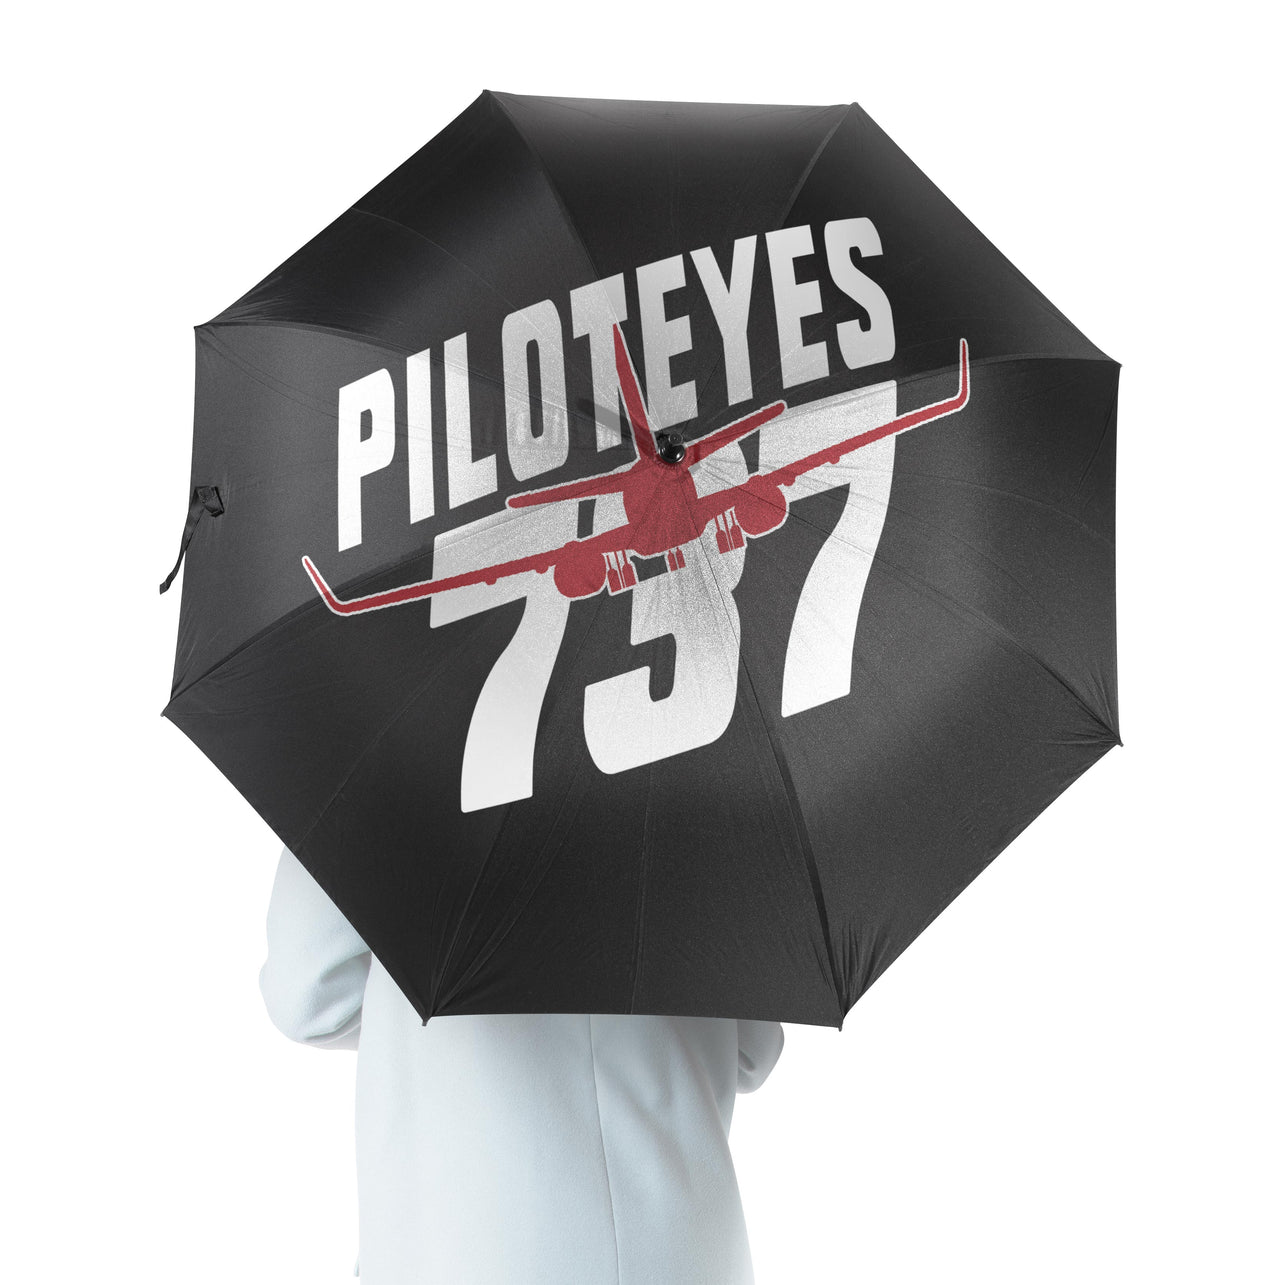 Amazing Piloteyes737 Designed Umbrella